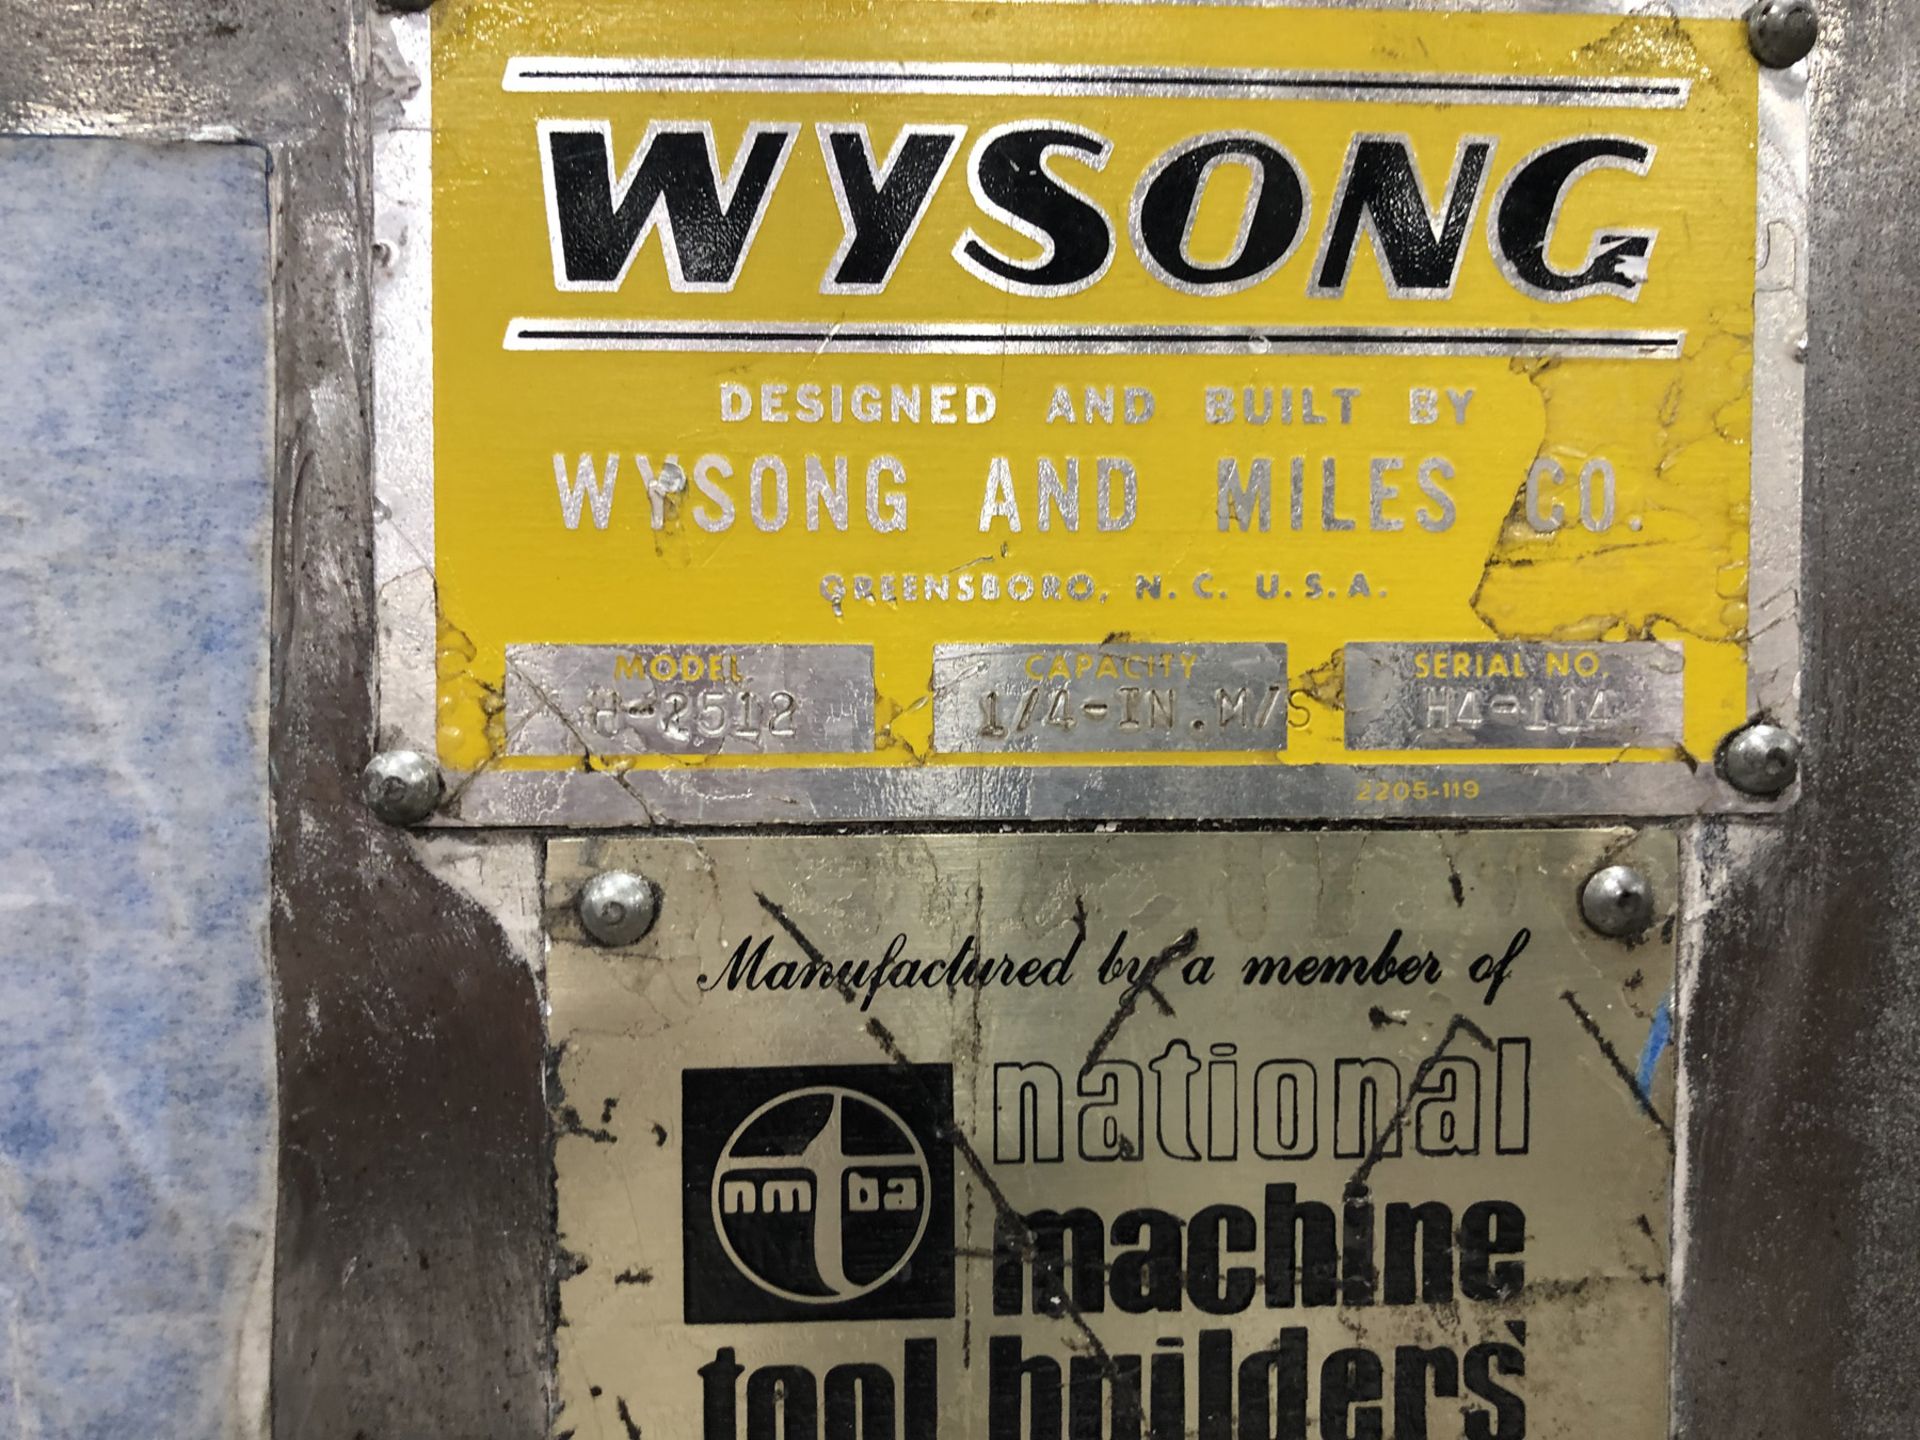 12' x 1/4" Wysong Model H-2512 Hydraulic Shear - Image 9 of 10